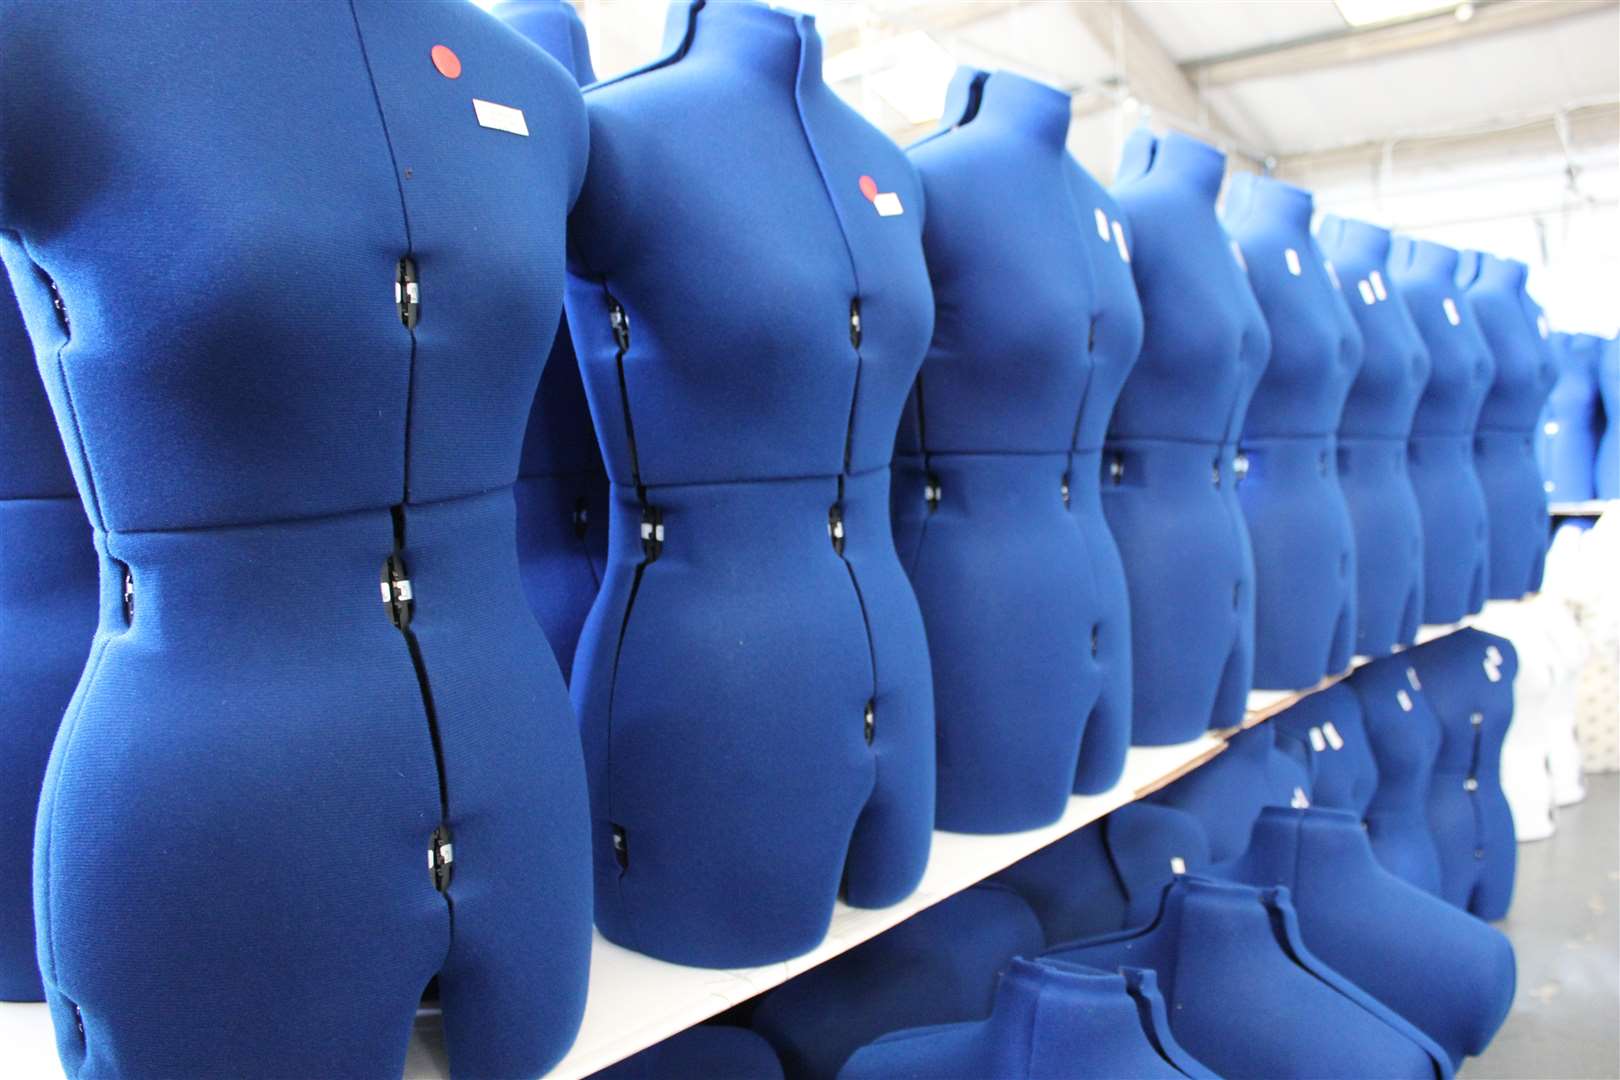 Adjustoform sells mannequins for dressmaking